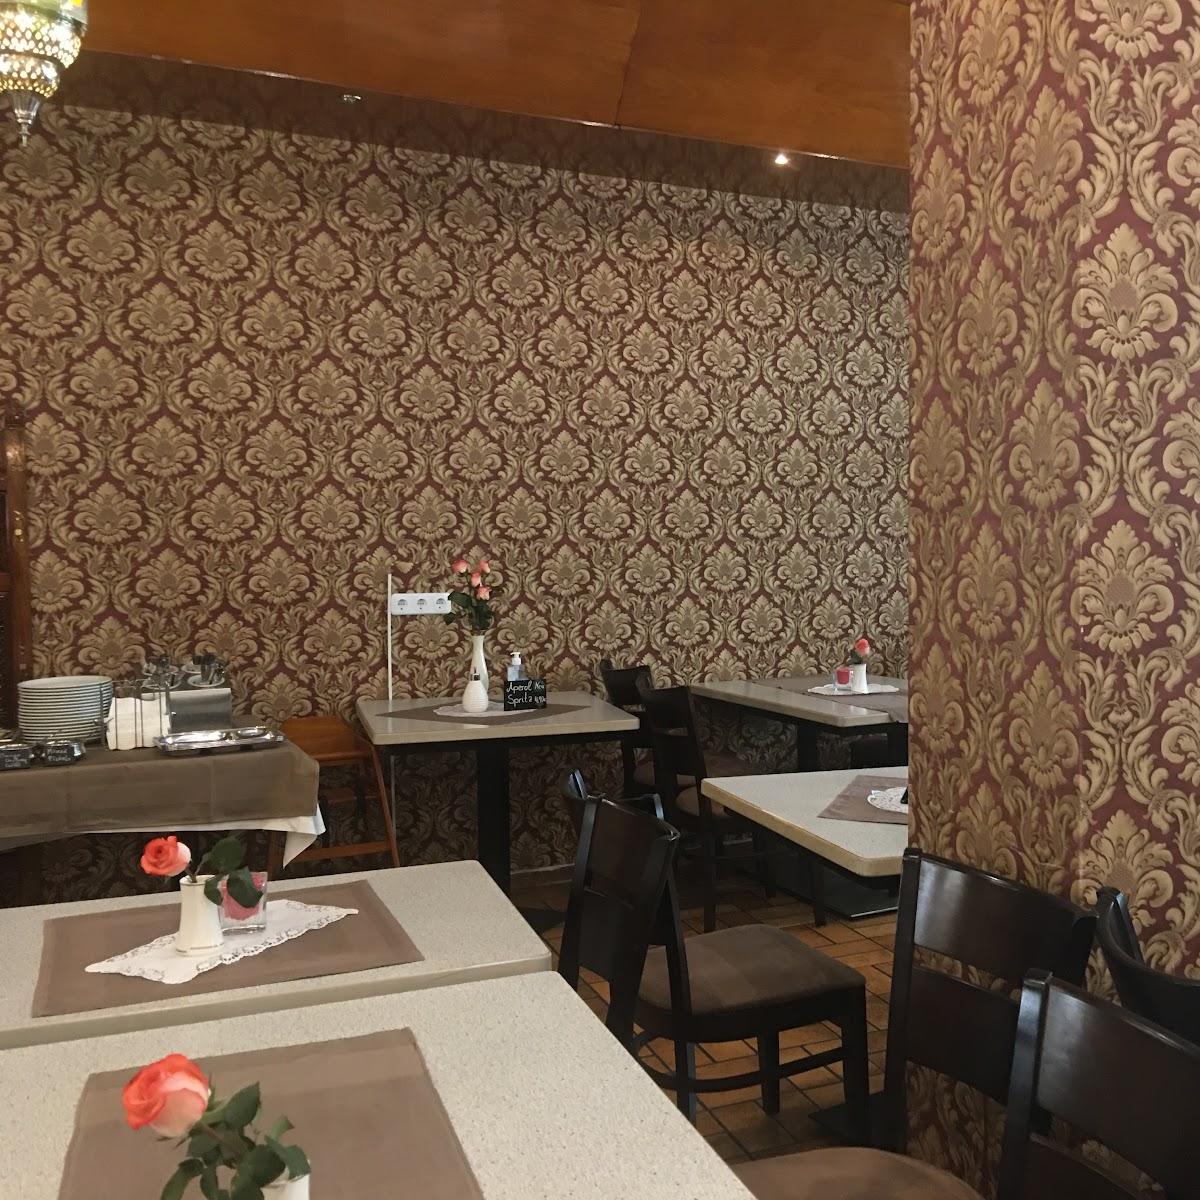 Restaurant "Haveli Restaurant" in Heidelberg